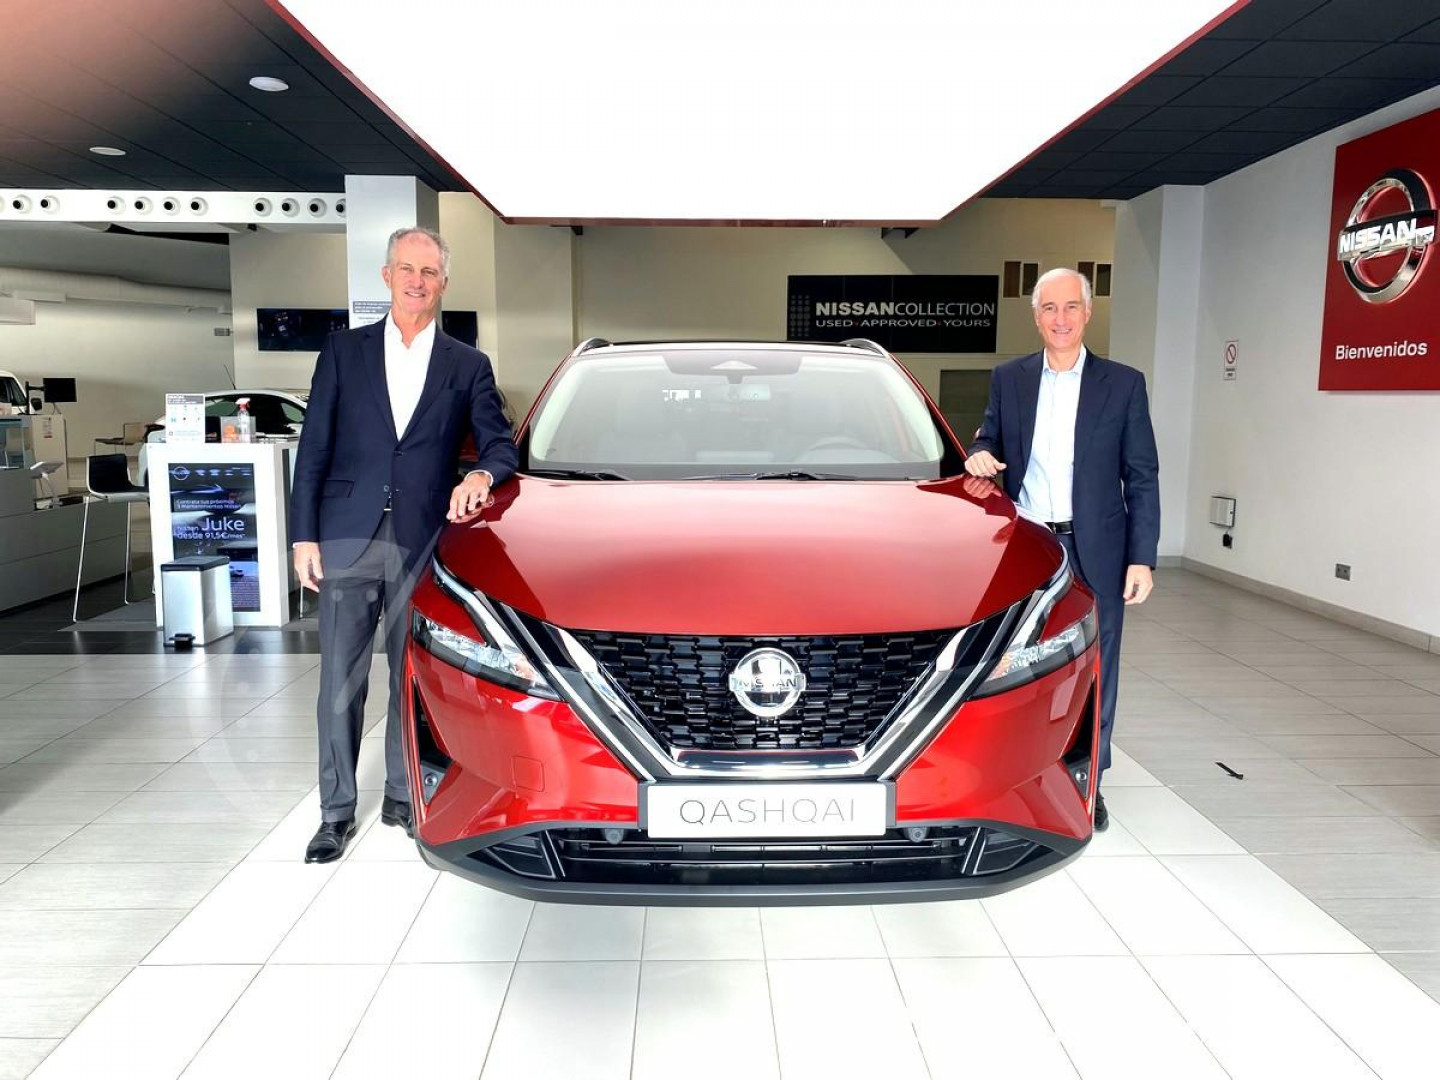 Bruno Mattucci, CEO de Nissan España, visita la Red de conces